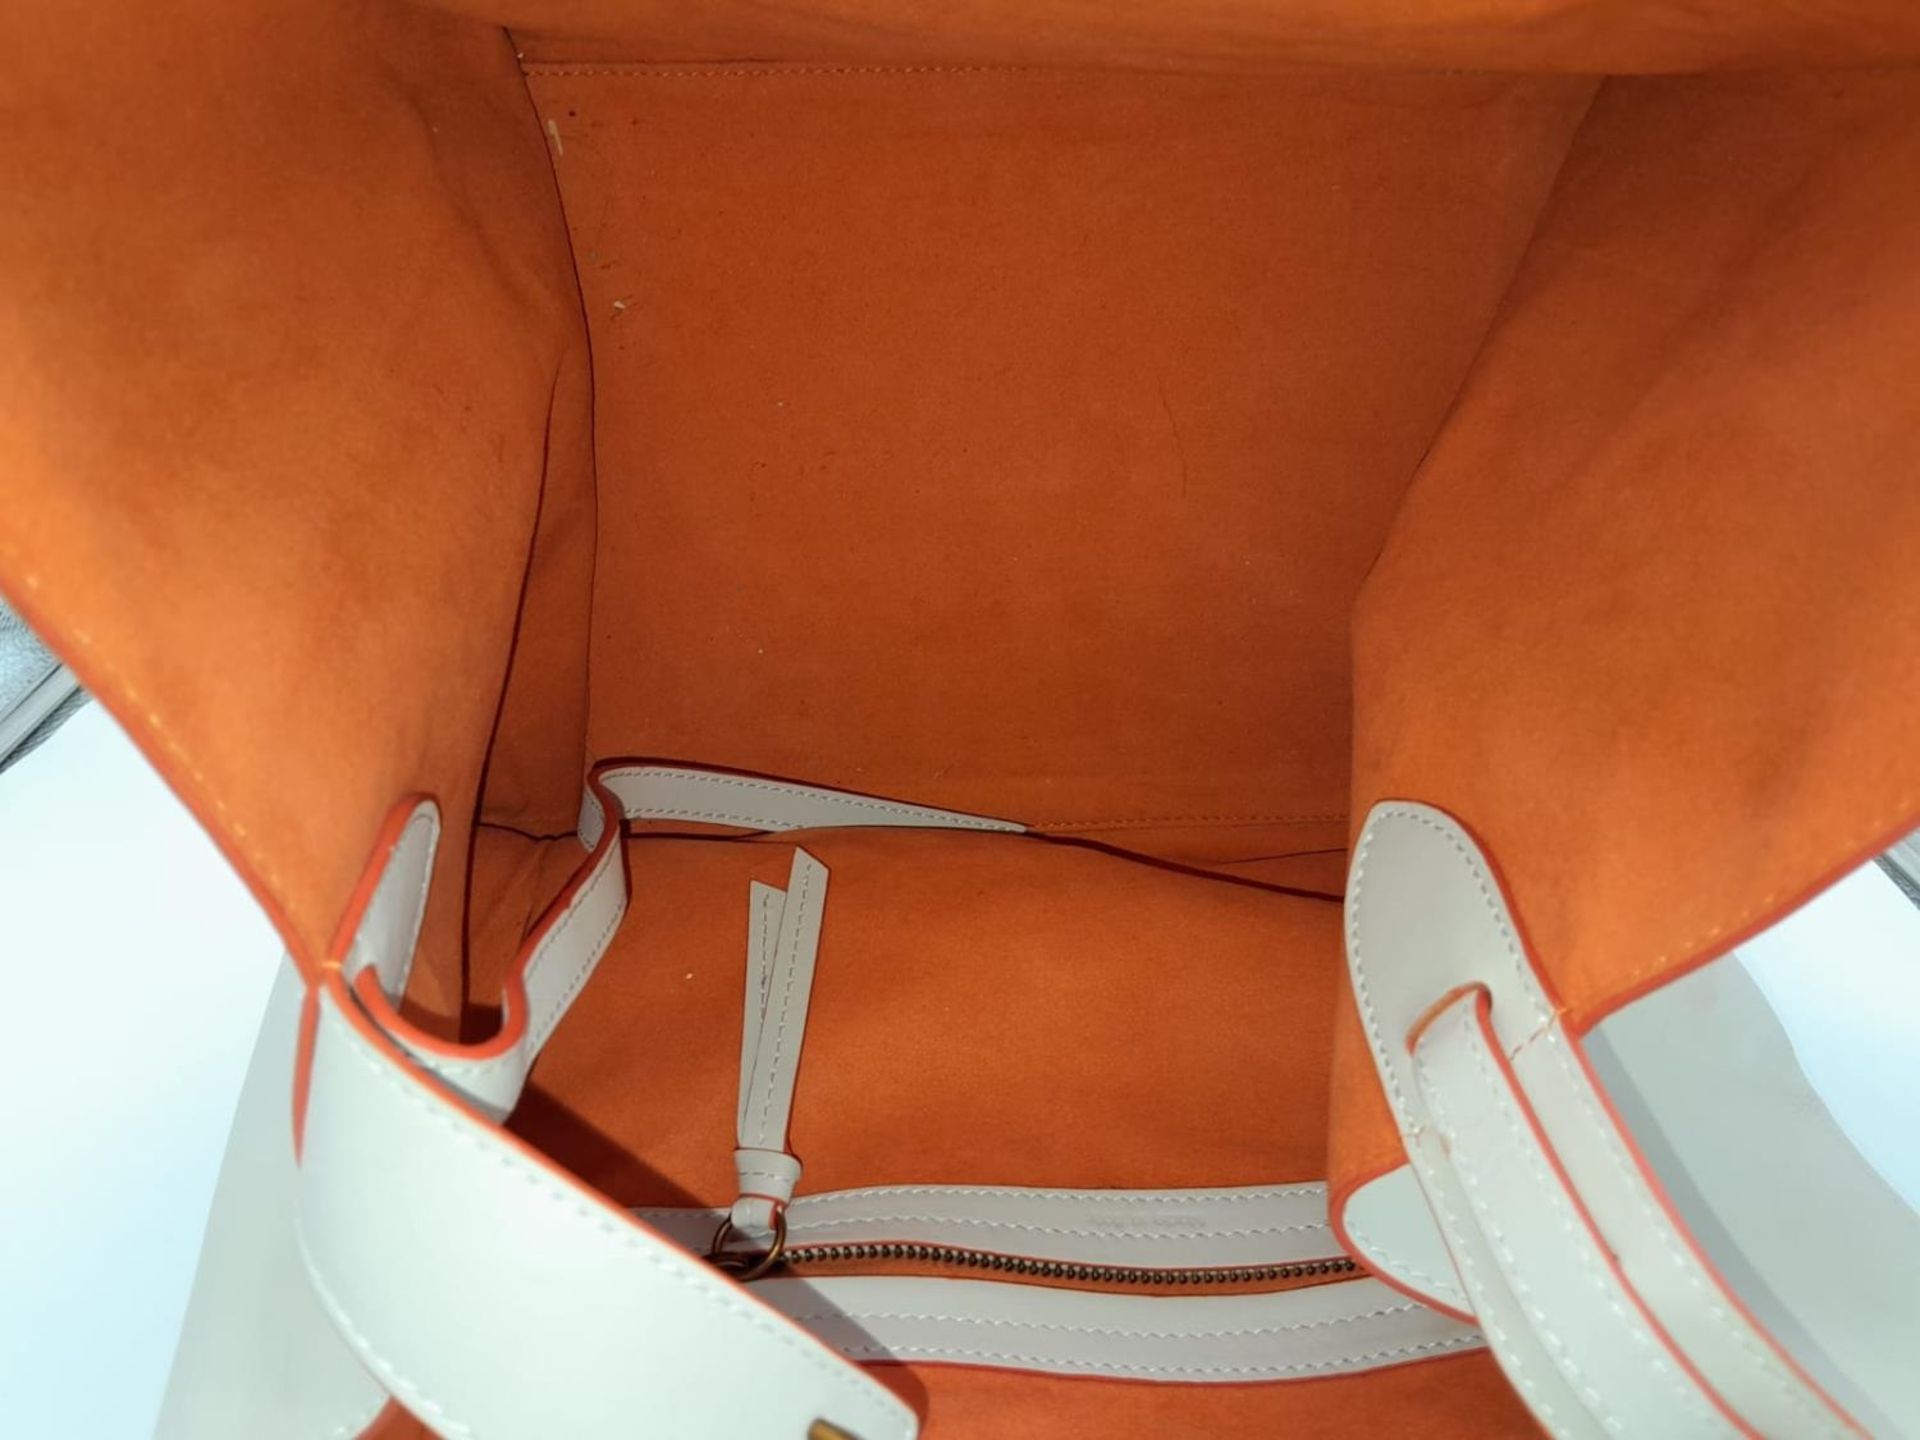 A Celine - Paris ladies tote bag , cream leather with orange interior, dimensions: 30 x 24 x 40 cm - Image 5 of 8